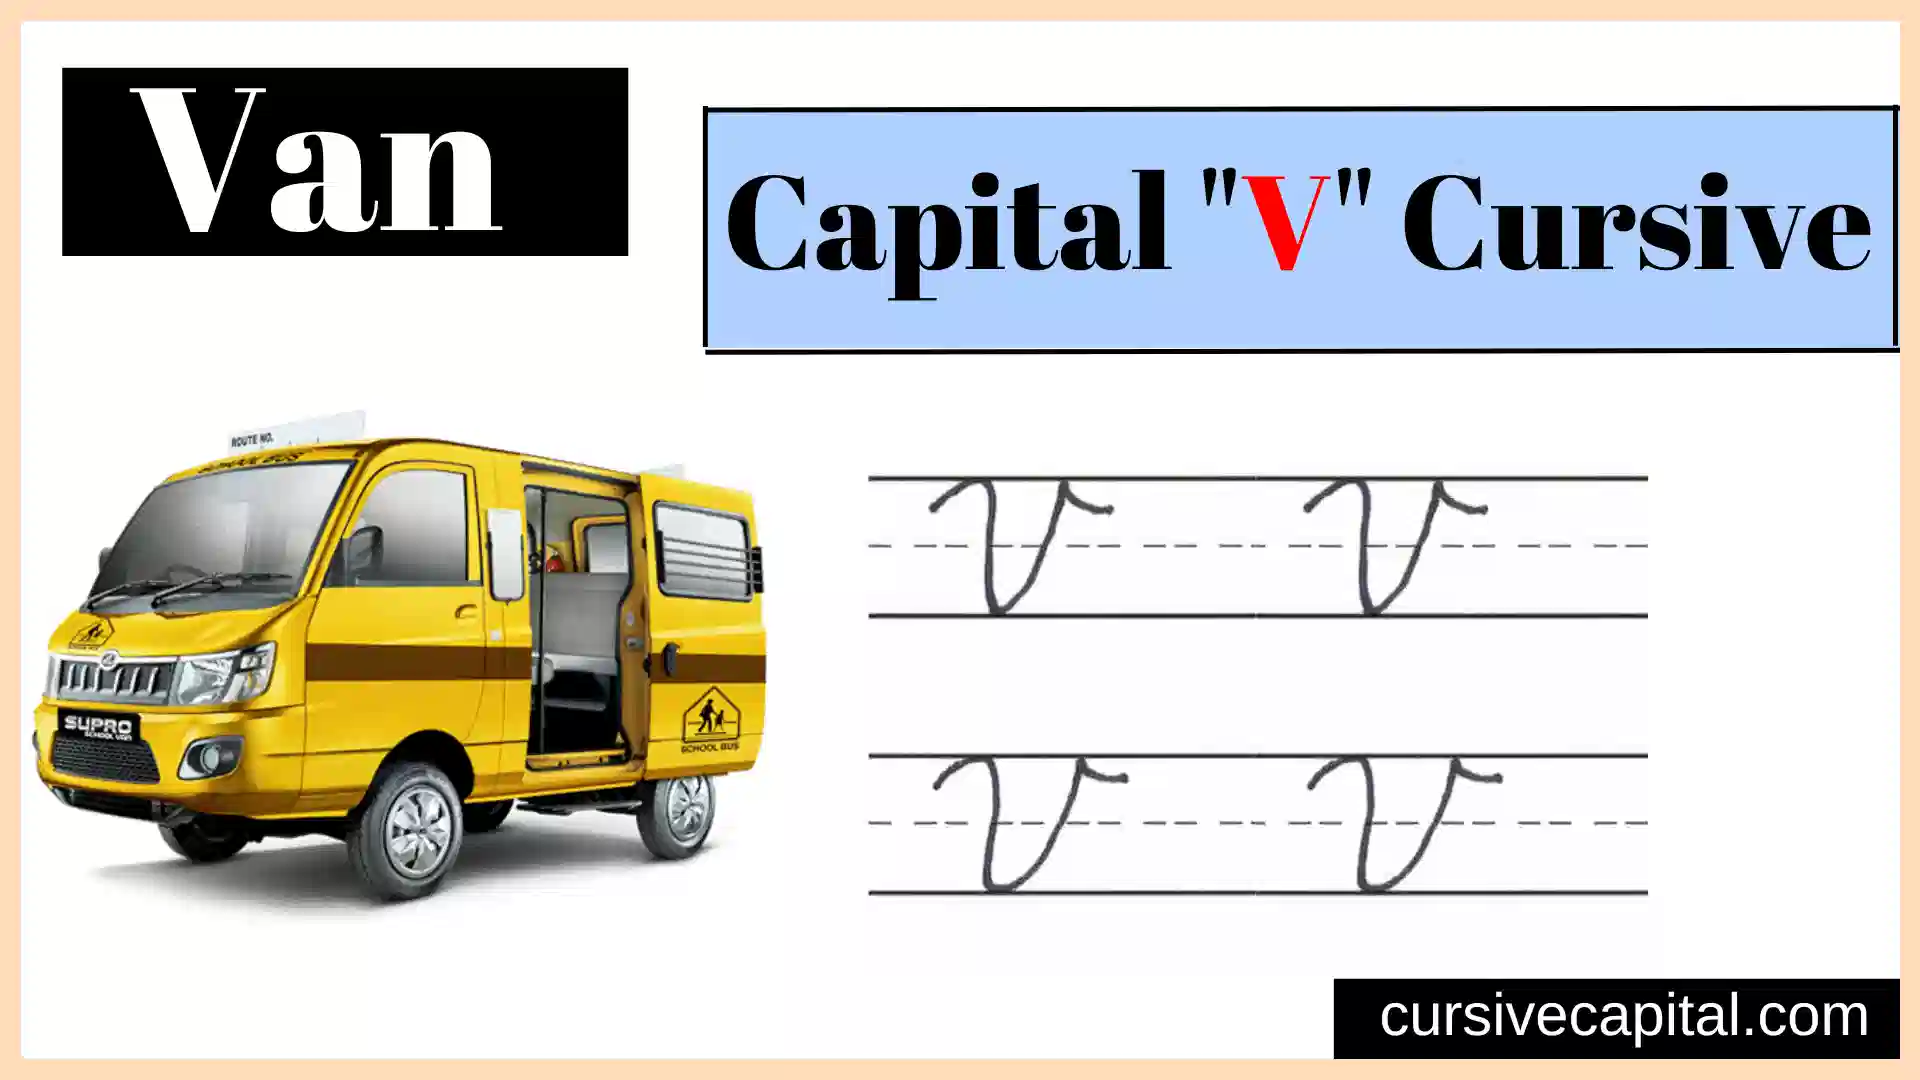 Capital V Cursive.webp